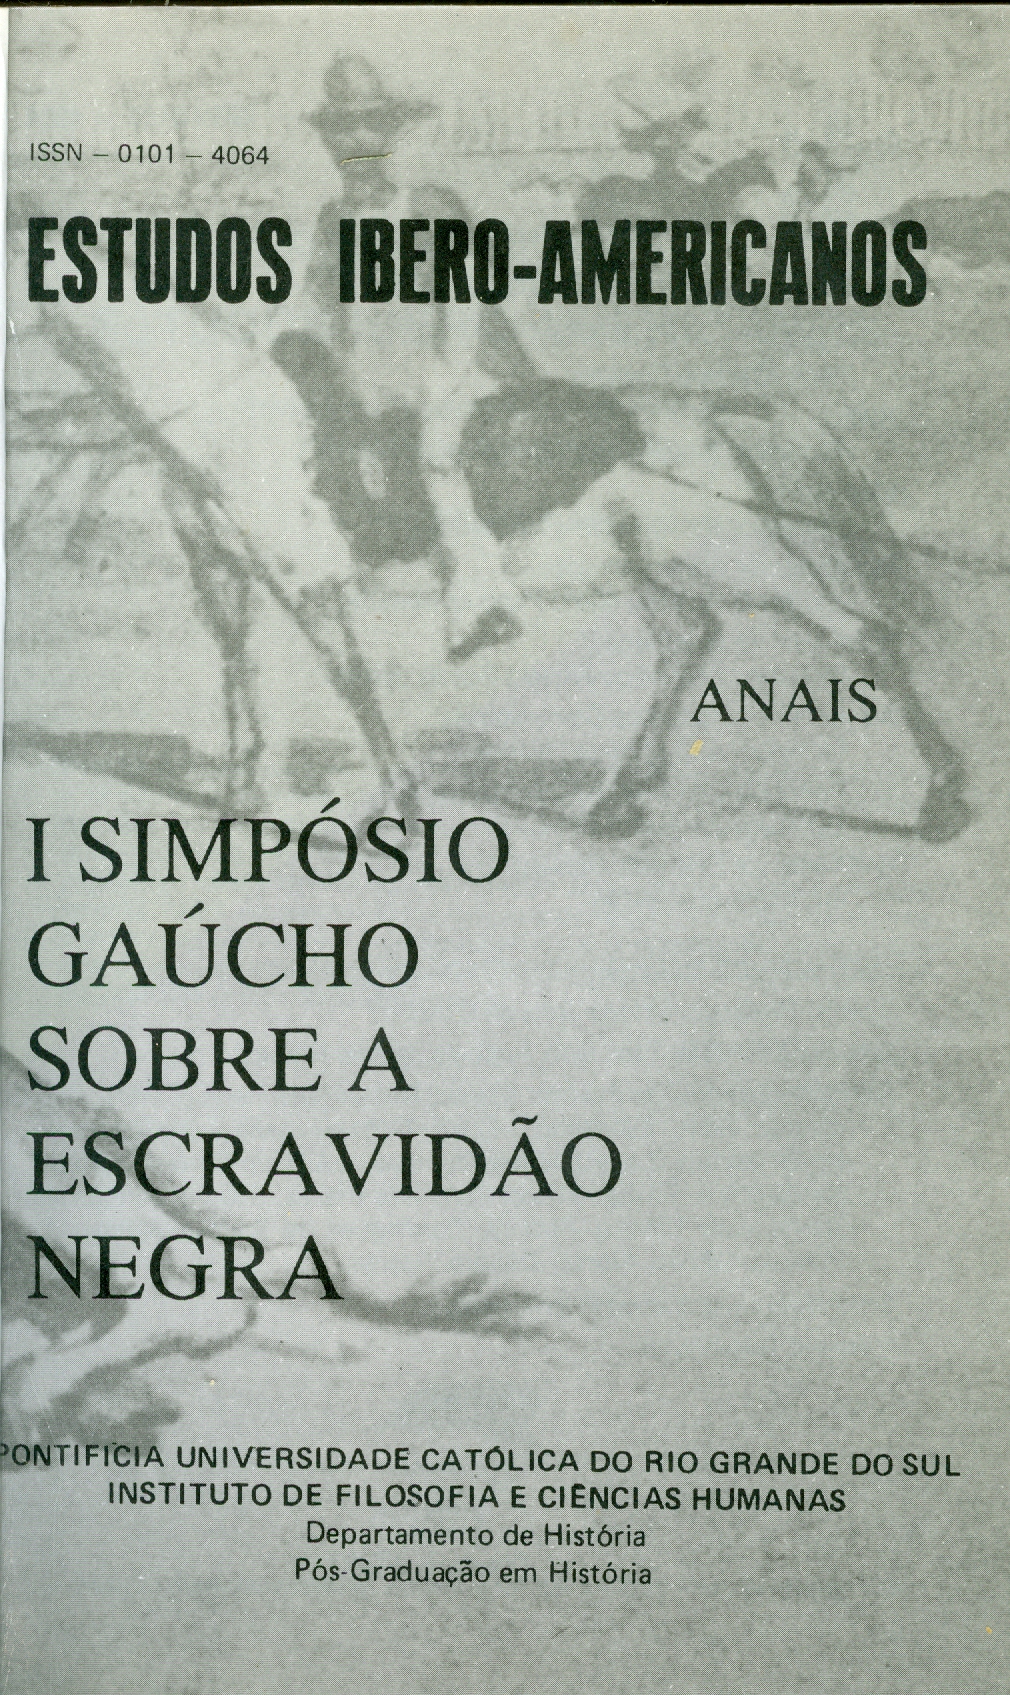 					Visualizar v. 16 n. 1, 2 (1990): Anais I Simpósio Gaúcho Sobre a Escravidão Negra
				